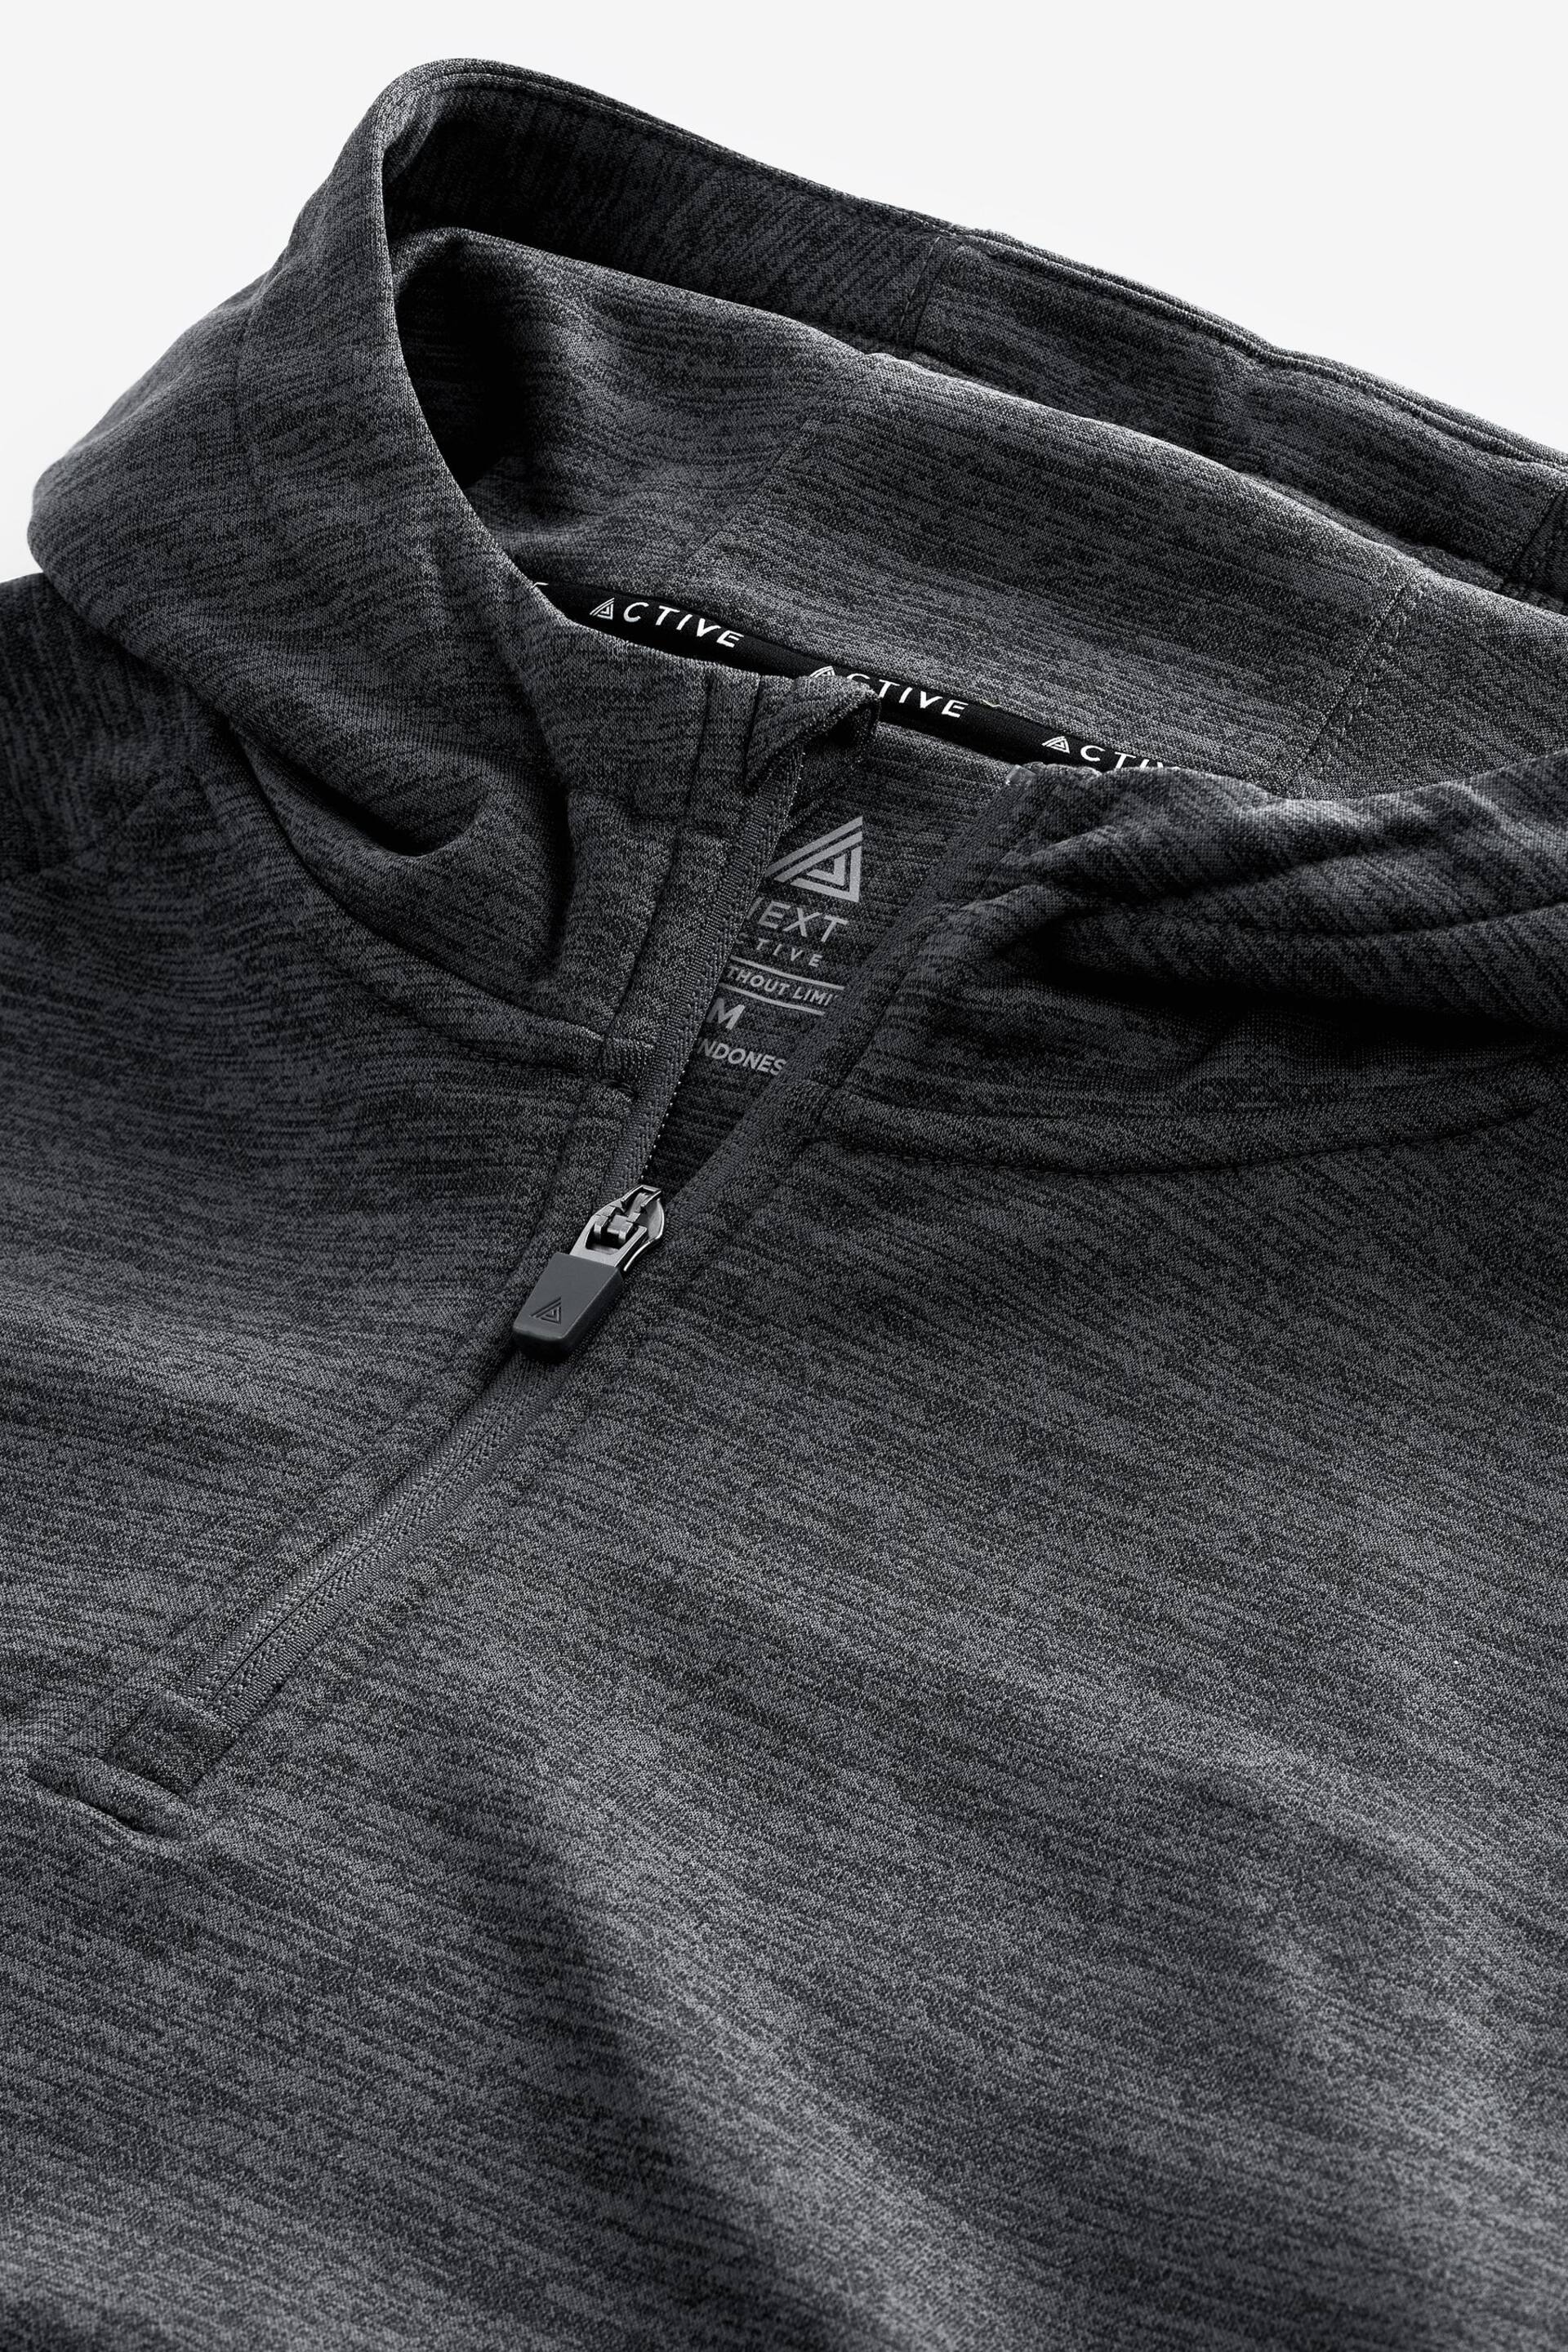 Charcoal Grey Tech Fleece Hoodie - Image 10 of 12